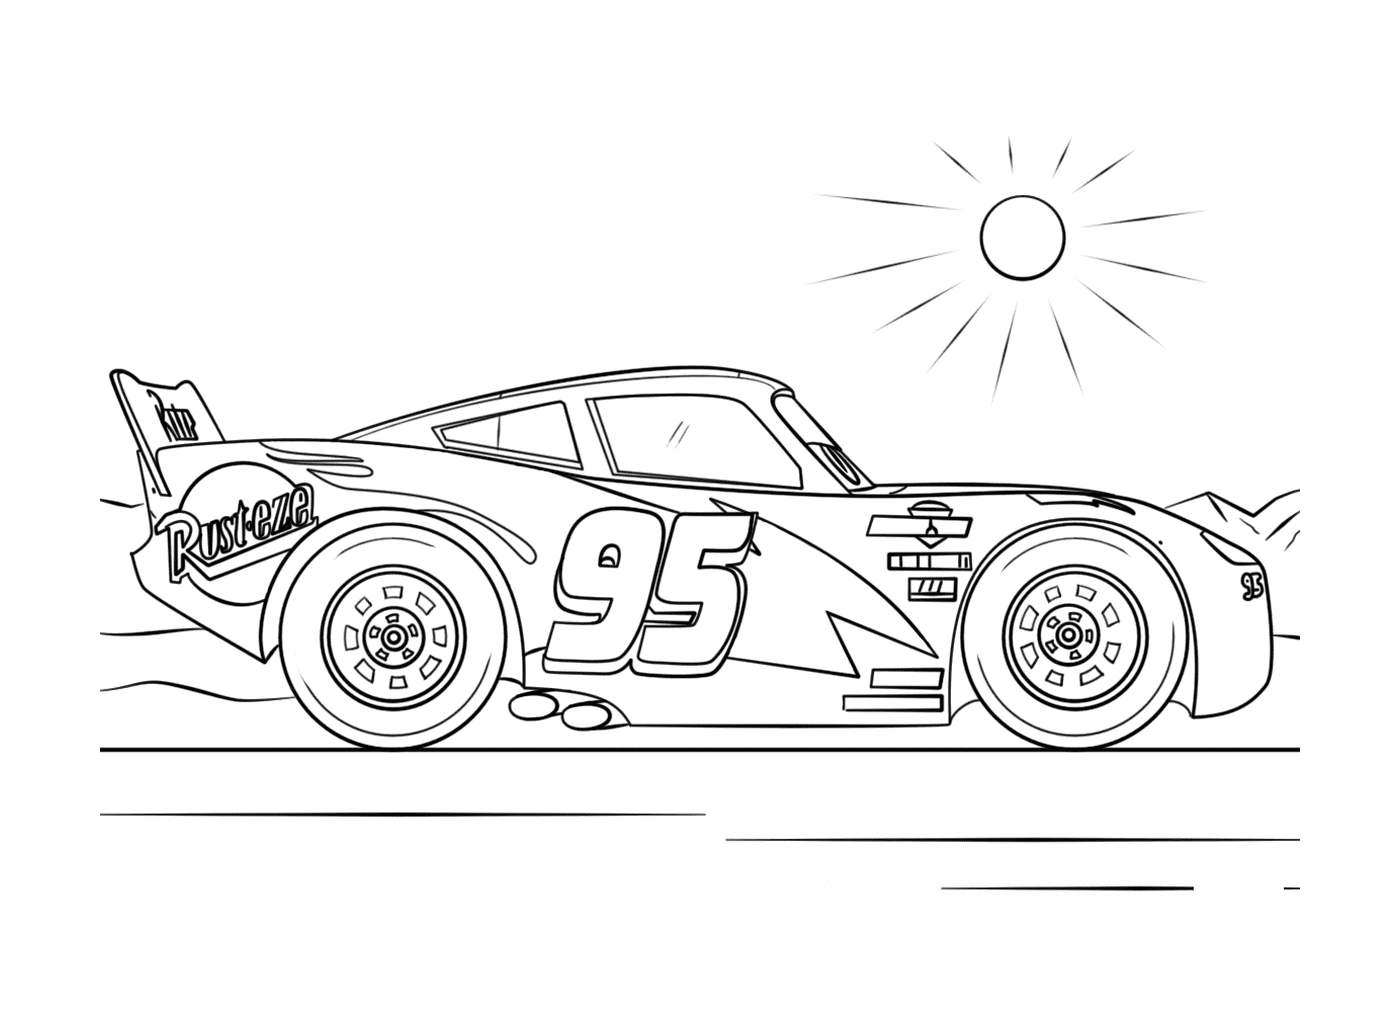  Lightning McQueen, Road Champion 